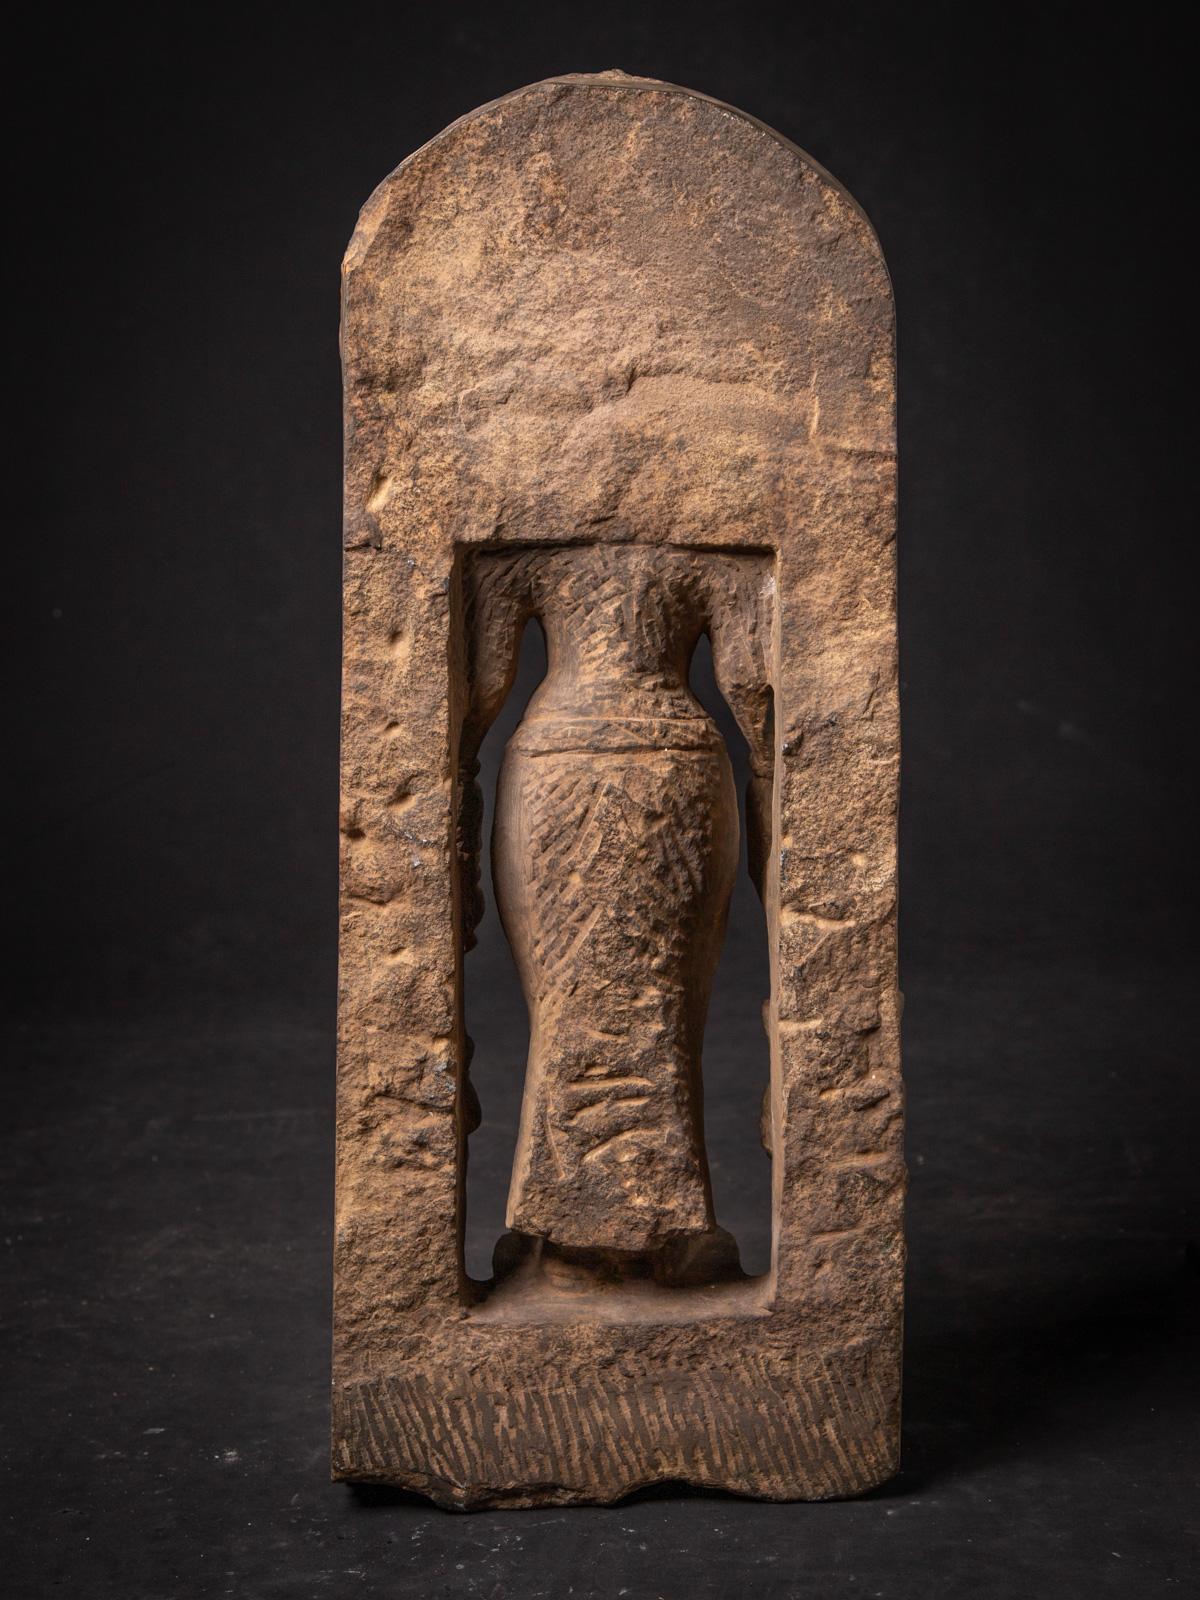 Cette statue en grès de Saraswati, accompagnée de Ganesha et de Kartikeya, est une pièce remarquable de l'art religieux indien. Fabriquée en grès, elle atteint une hauteur impressionnante de 88,5 cm et mesure 28 cm de largeur et 20 cm de profondeur.